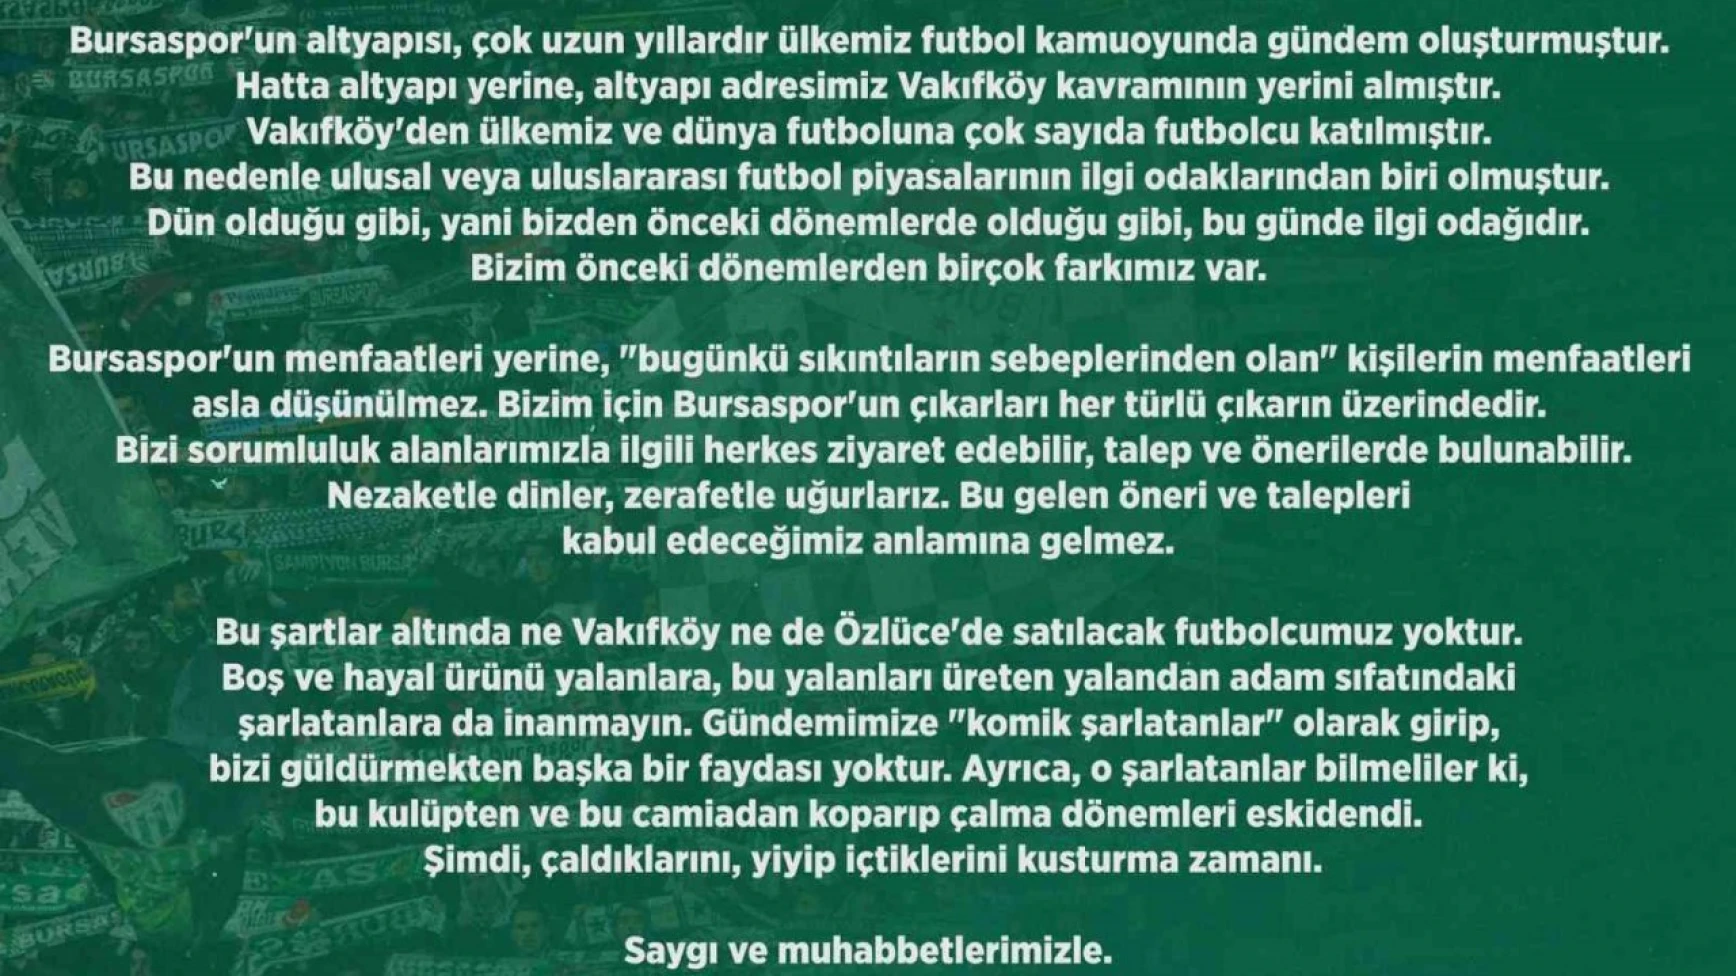 Bursaspor Kulübü: 'Satılacak futbolcumuz yok'